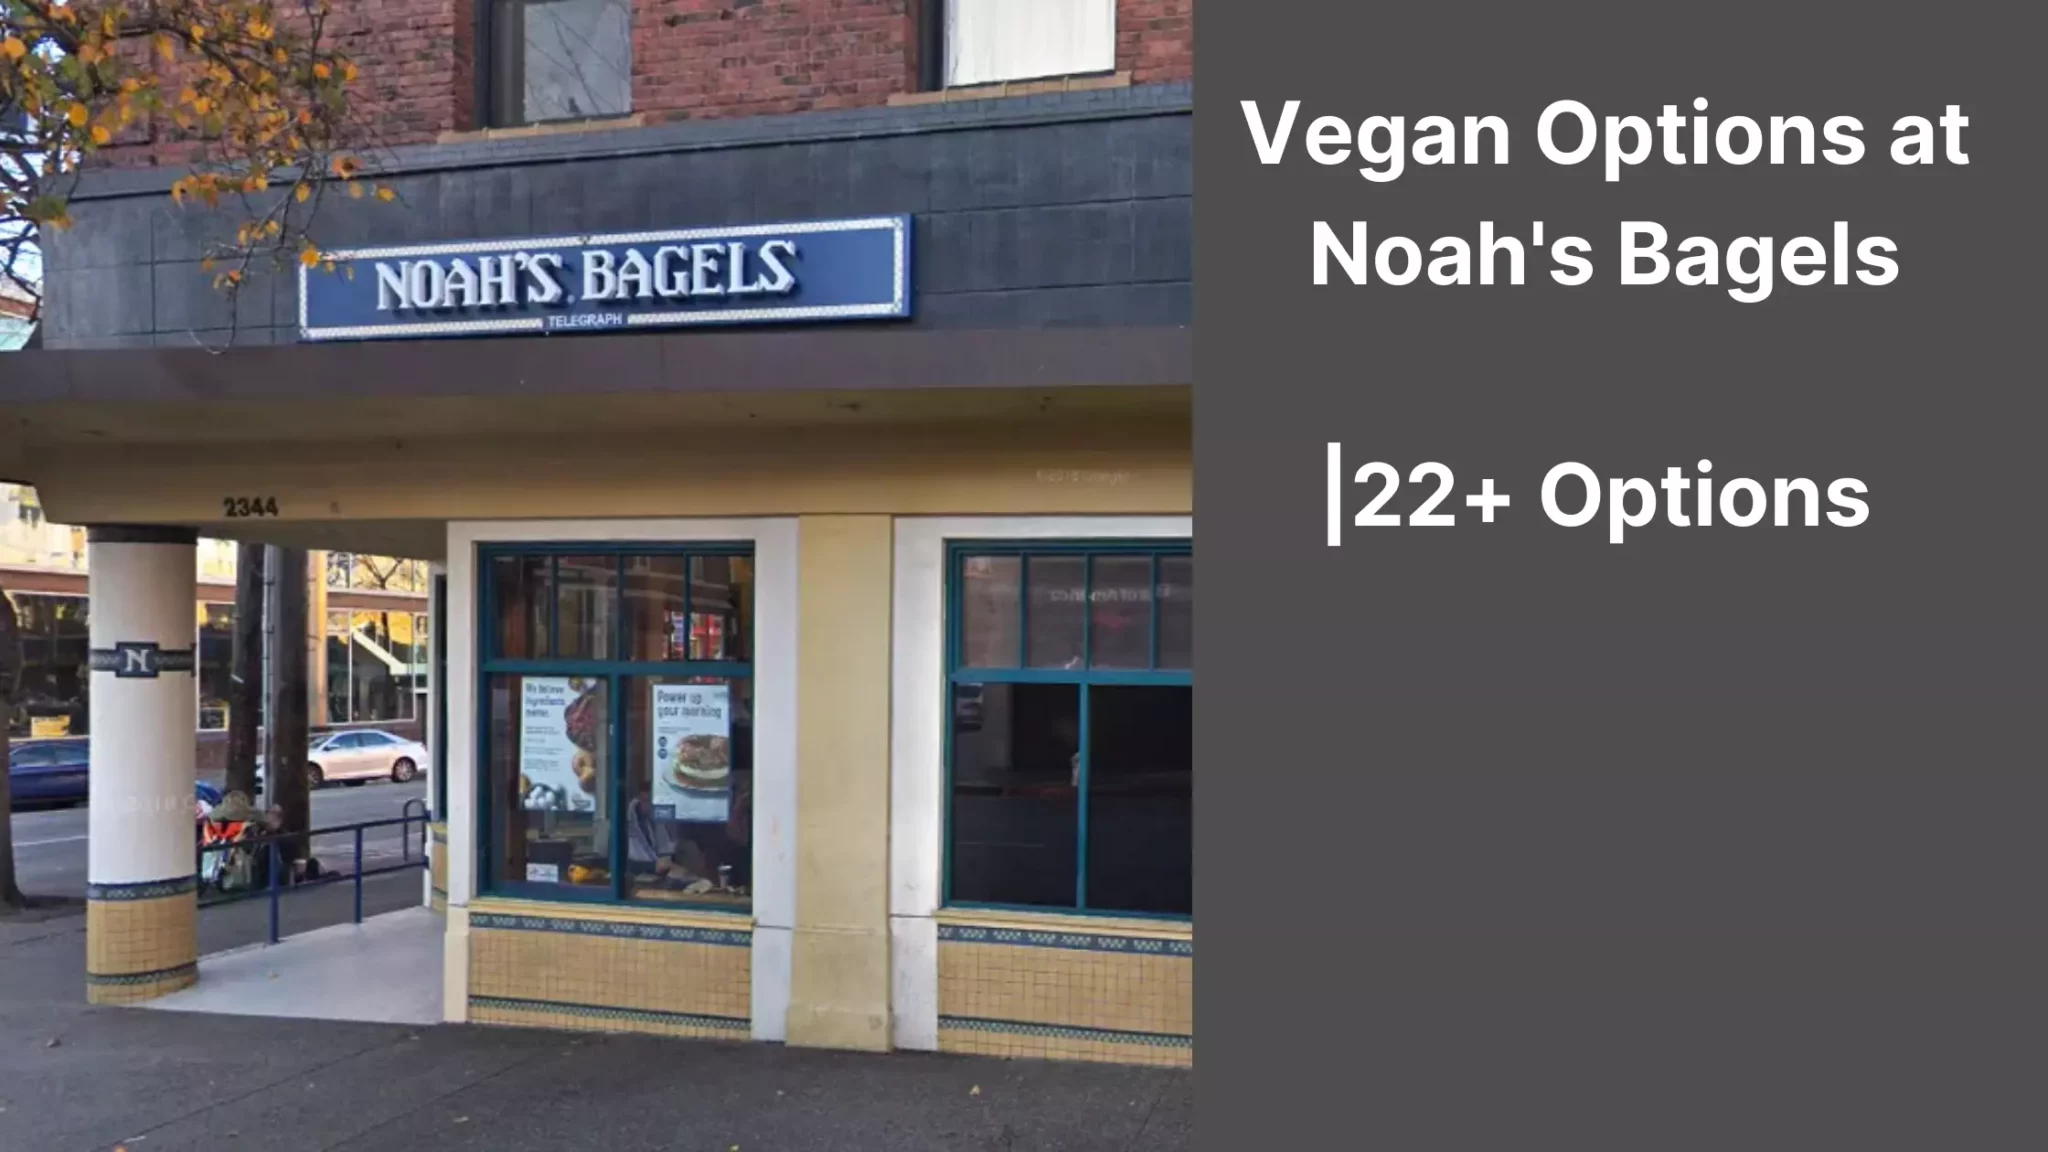 Vegan Options at Noah's Bagels